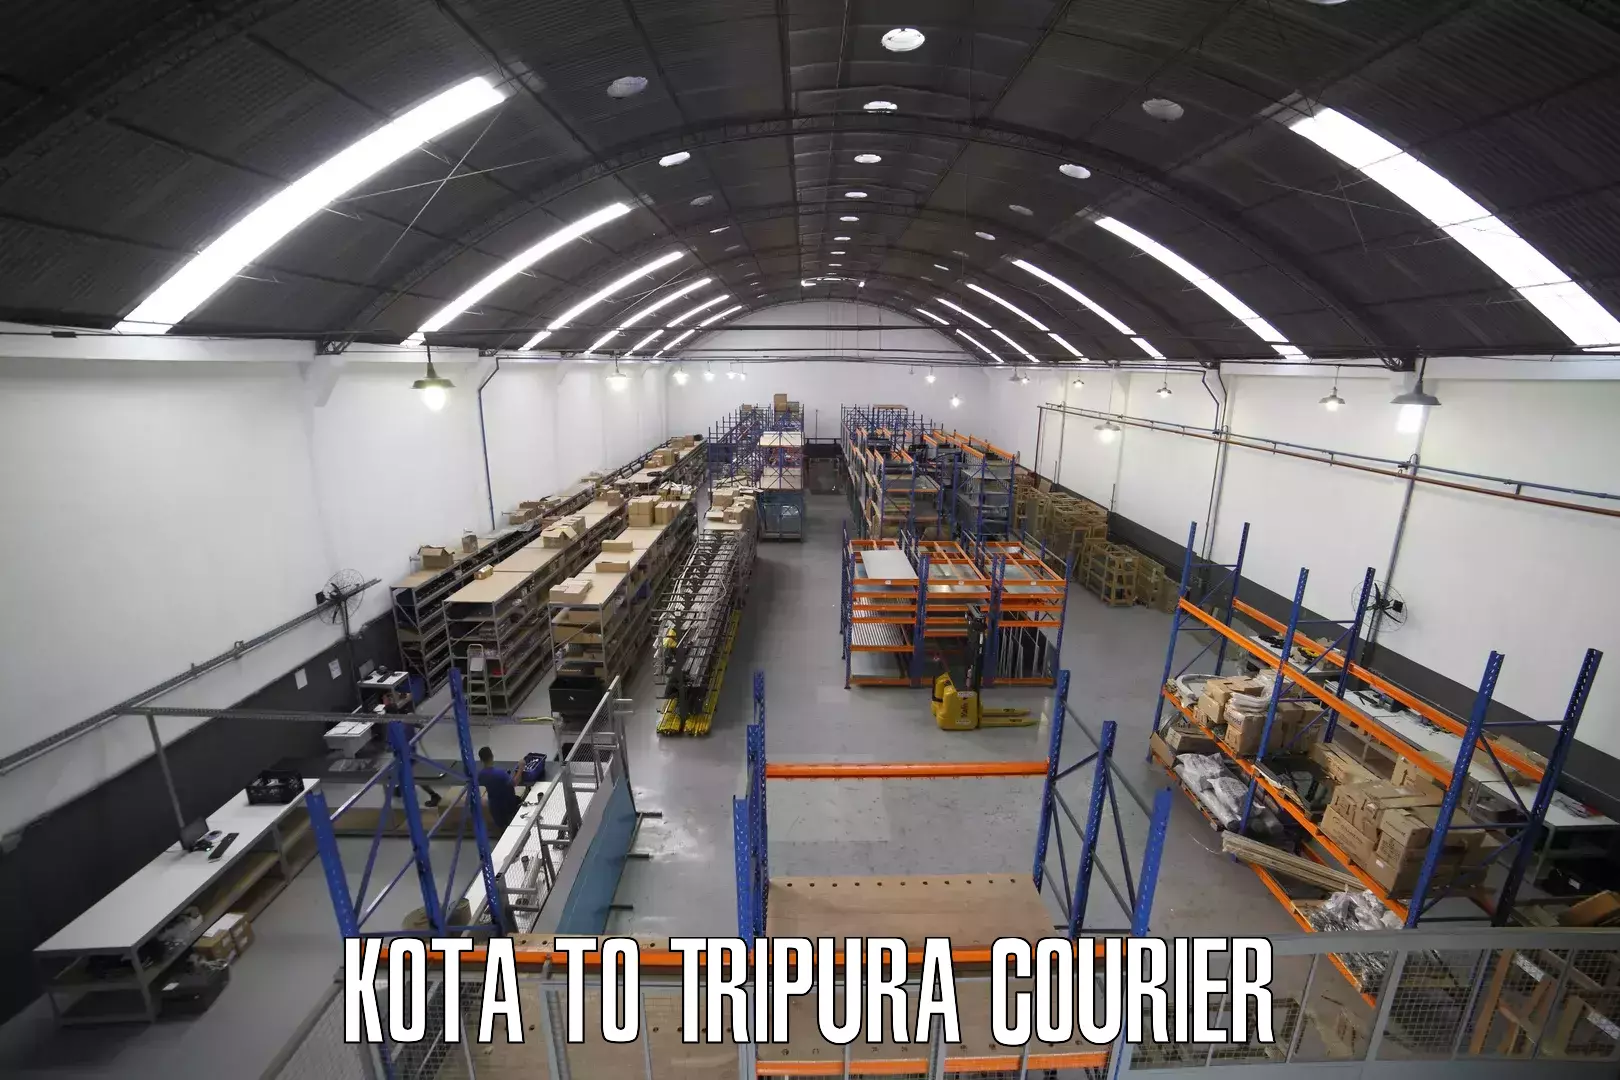 Global parcel delivery Kota to Udaipur Tripura